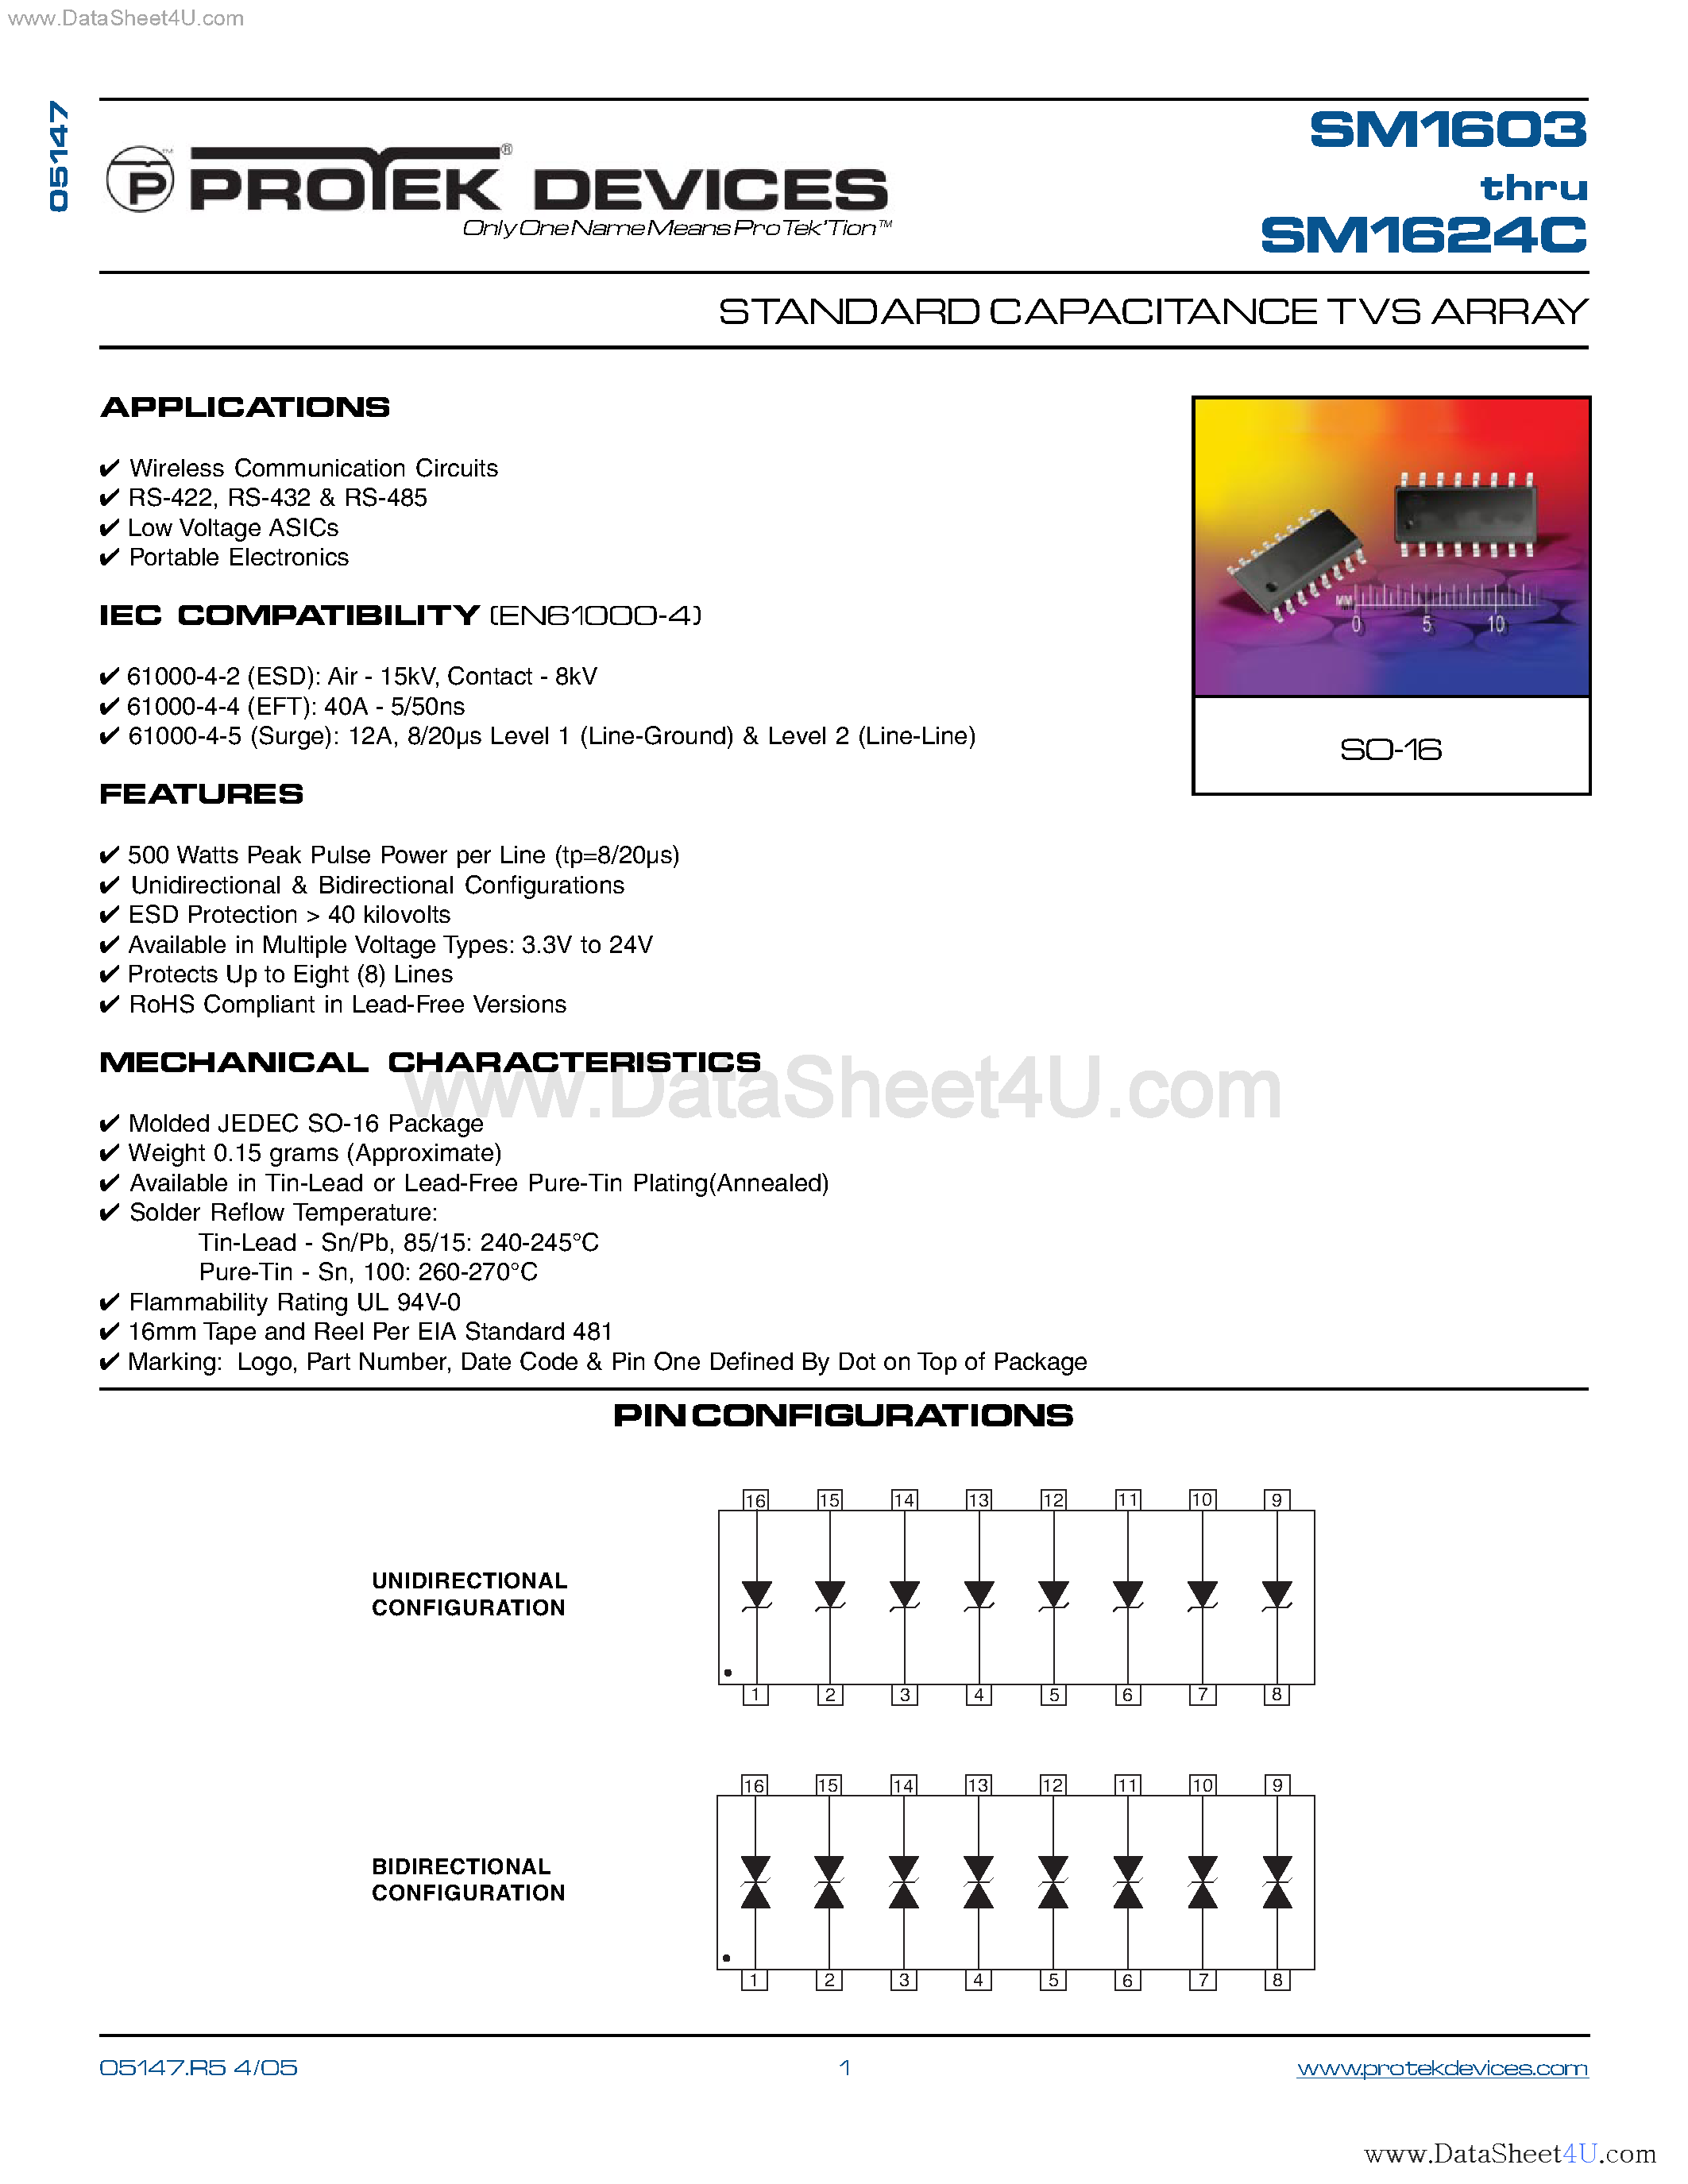 Даташит SM1603 - (SM1603 - SM1624) STANDARD CAPACITANCE TVS ARRAY страница 1